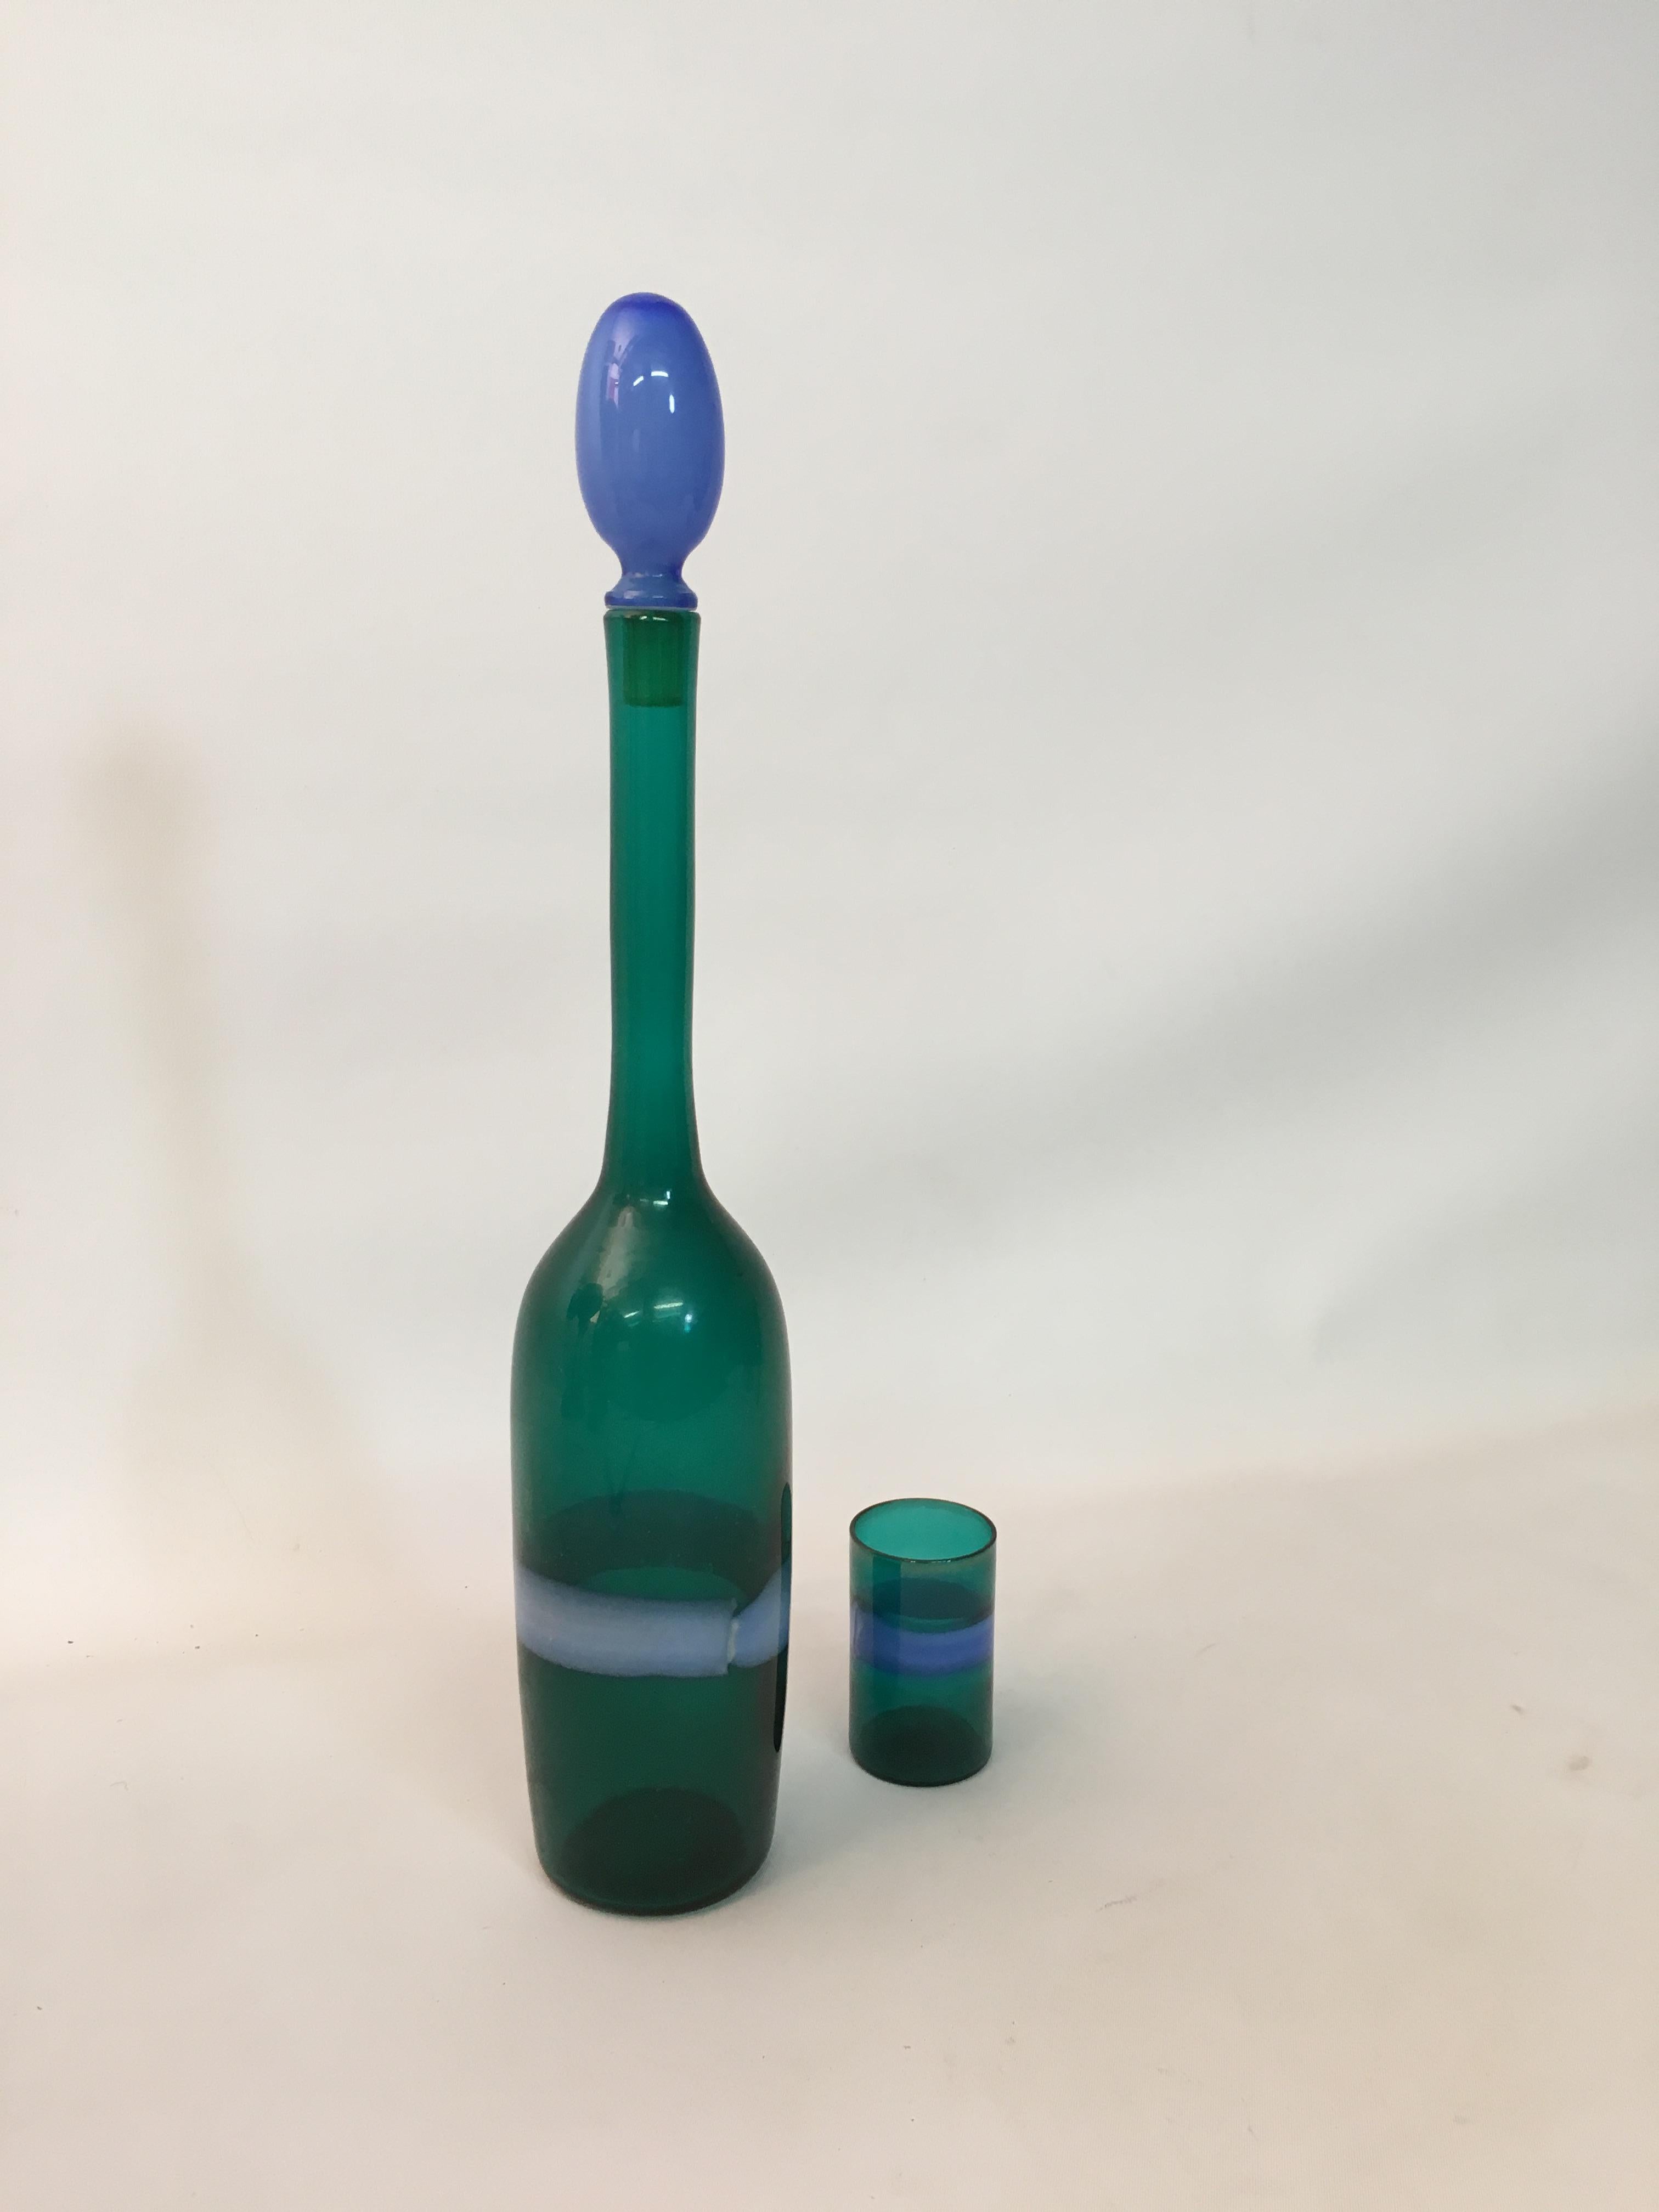 Elegantes italienisches Design von Glasbläsermeister Fulvio Bianconi für Venini, um 1955. Dekantierflasche aus Incalmo-Glas mit kleinem Schnapsglas. Beide Stücke sind mit Venini-Papieretiketten signiert. Der Korken ist azurblau und der